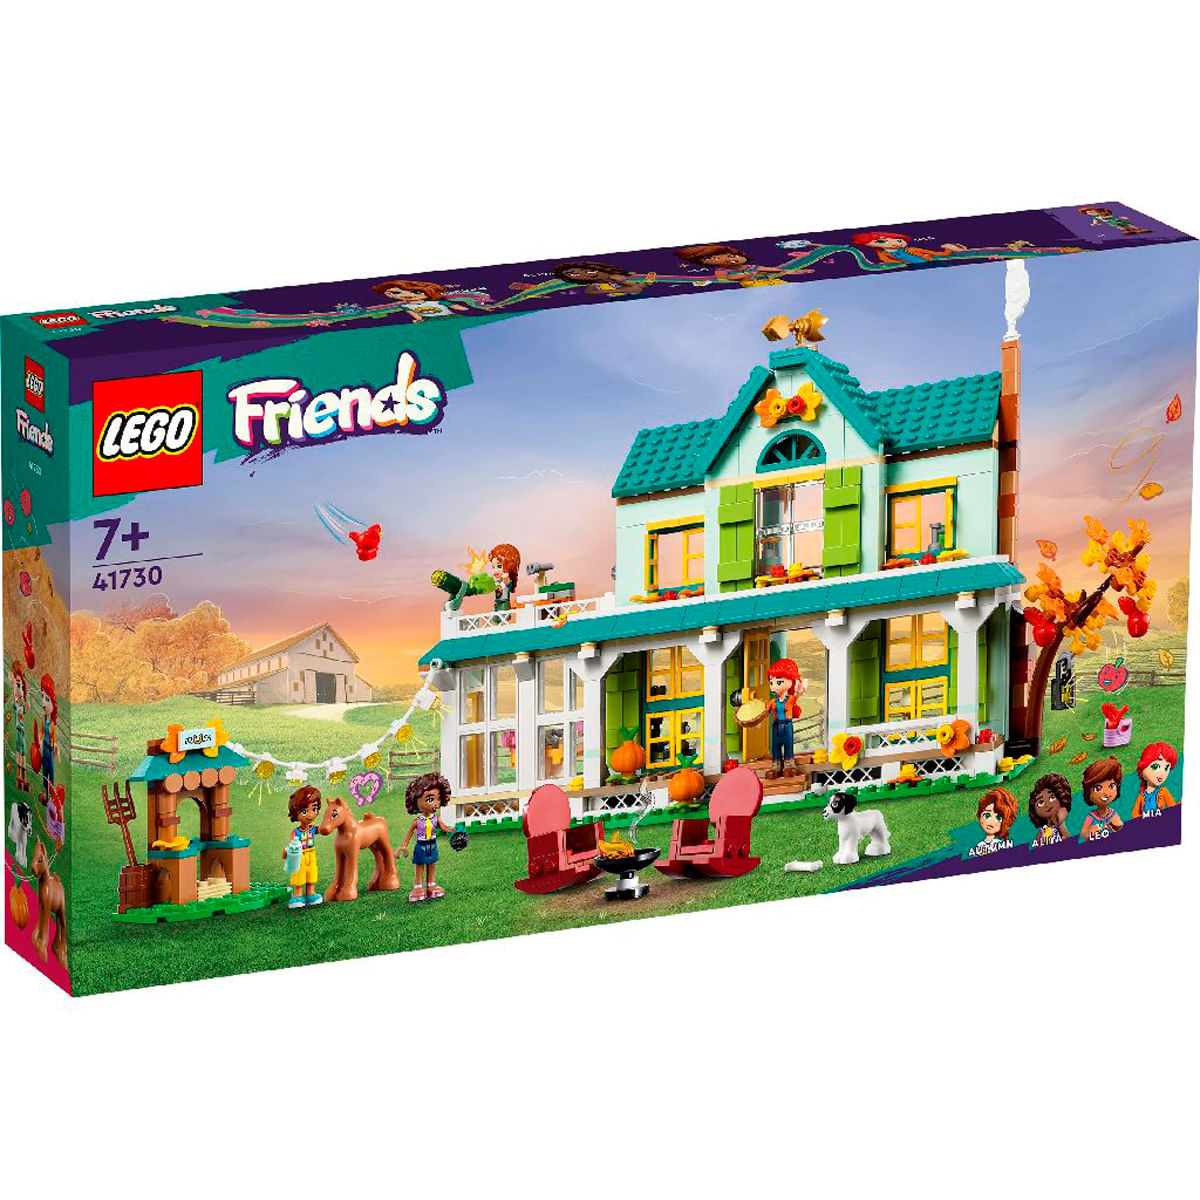 Espectacular Publicación atmósfera Lego Friends Casa de Autumn